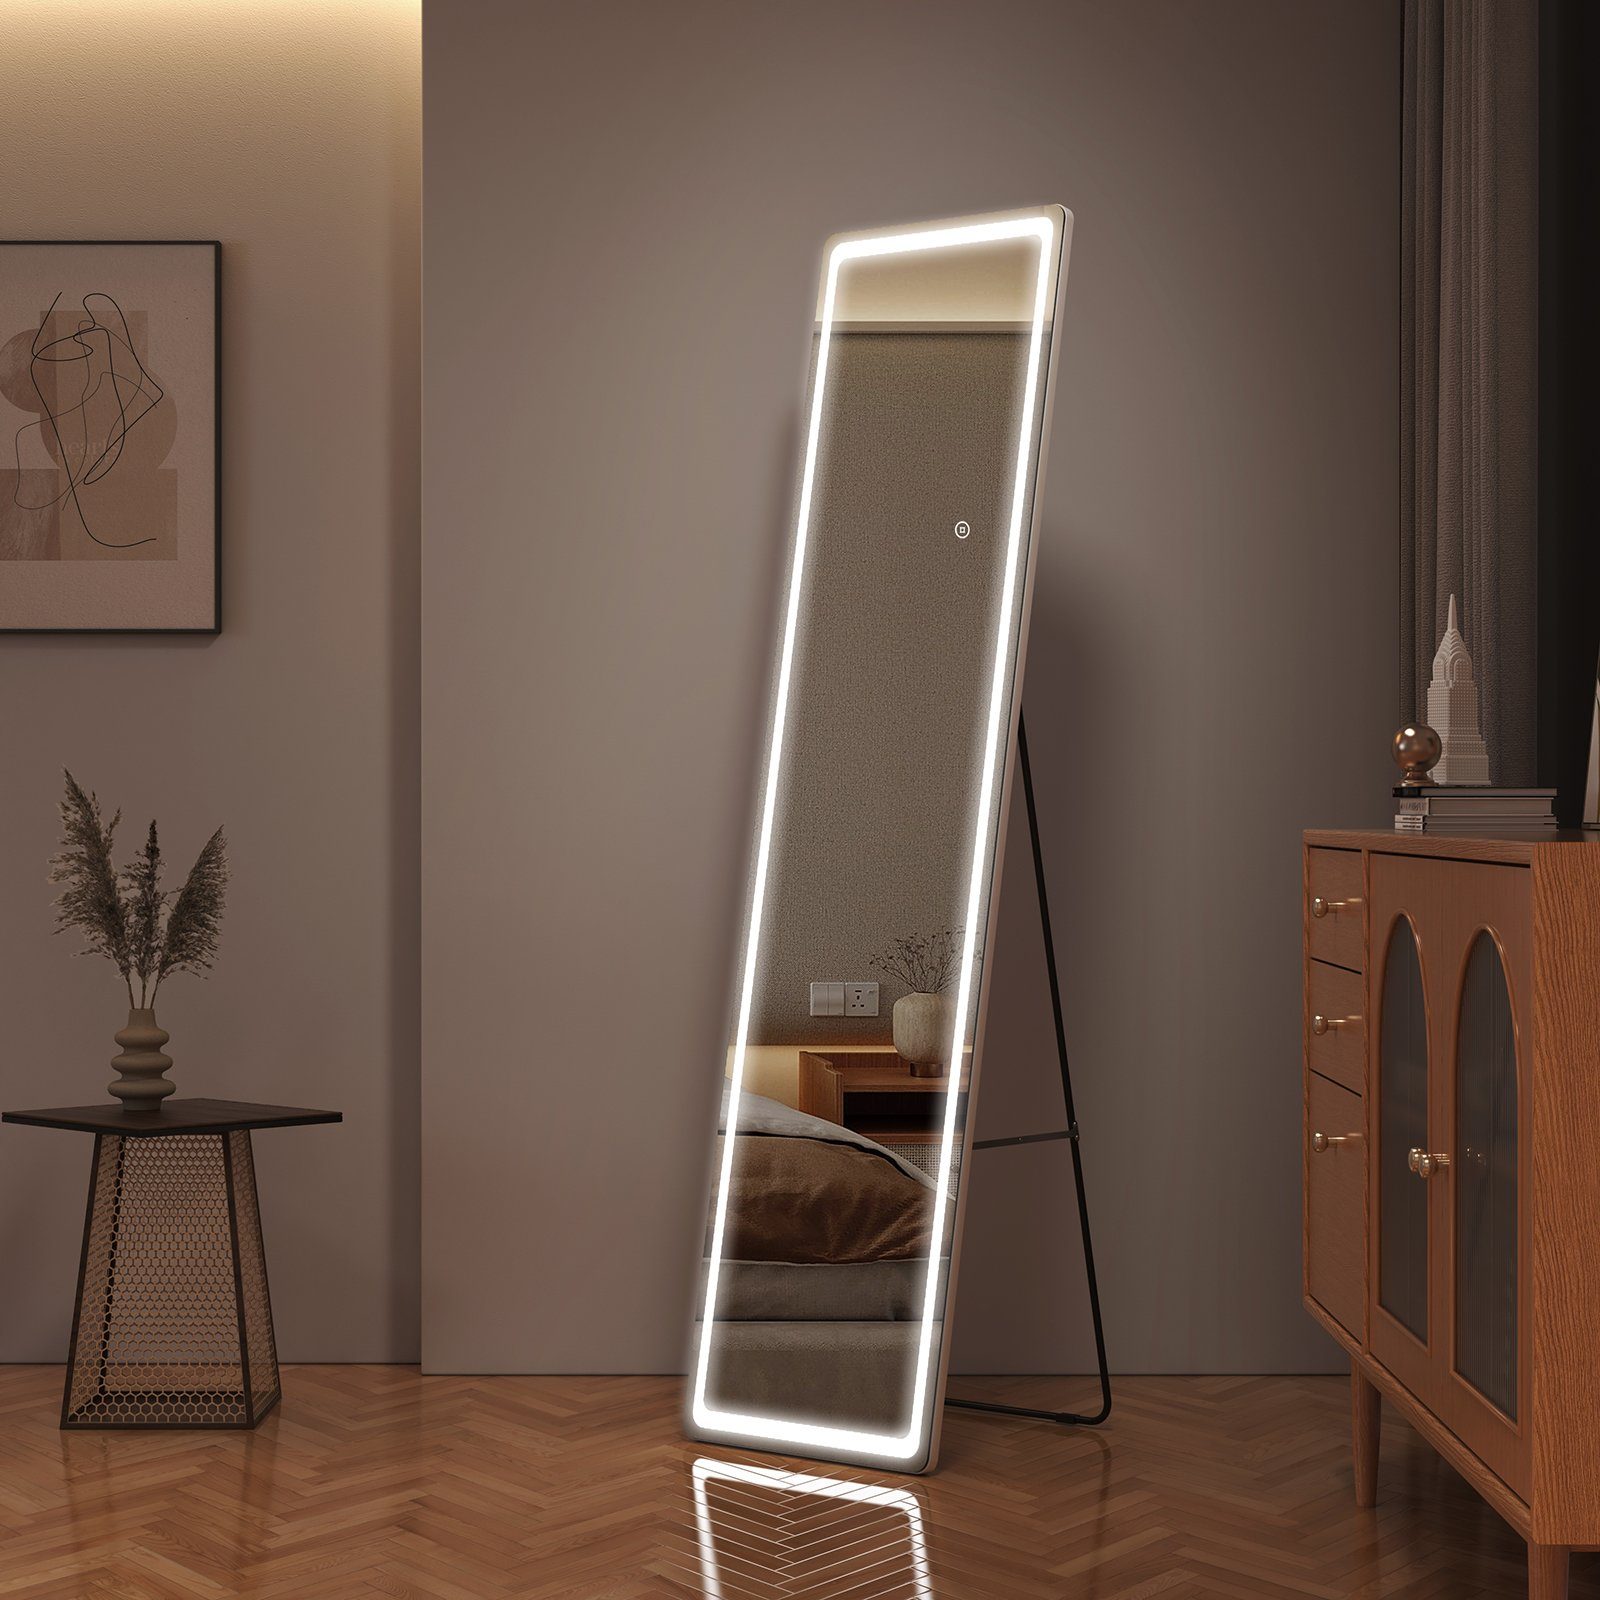 EMKE Ganzkörperspiegel 160x40cm Standspiegel mit Beleuchtung LED Wandspiegel, mit Touch und 3 Lichtfarben, 2 Installationsmethoden